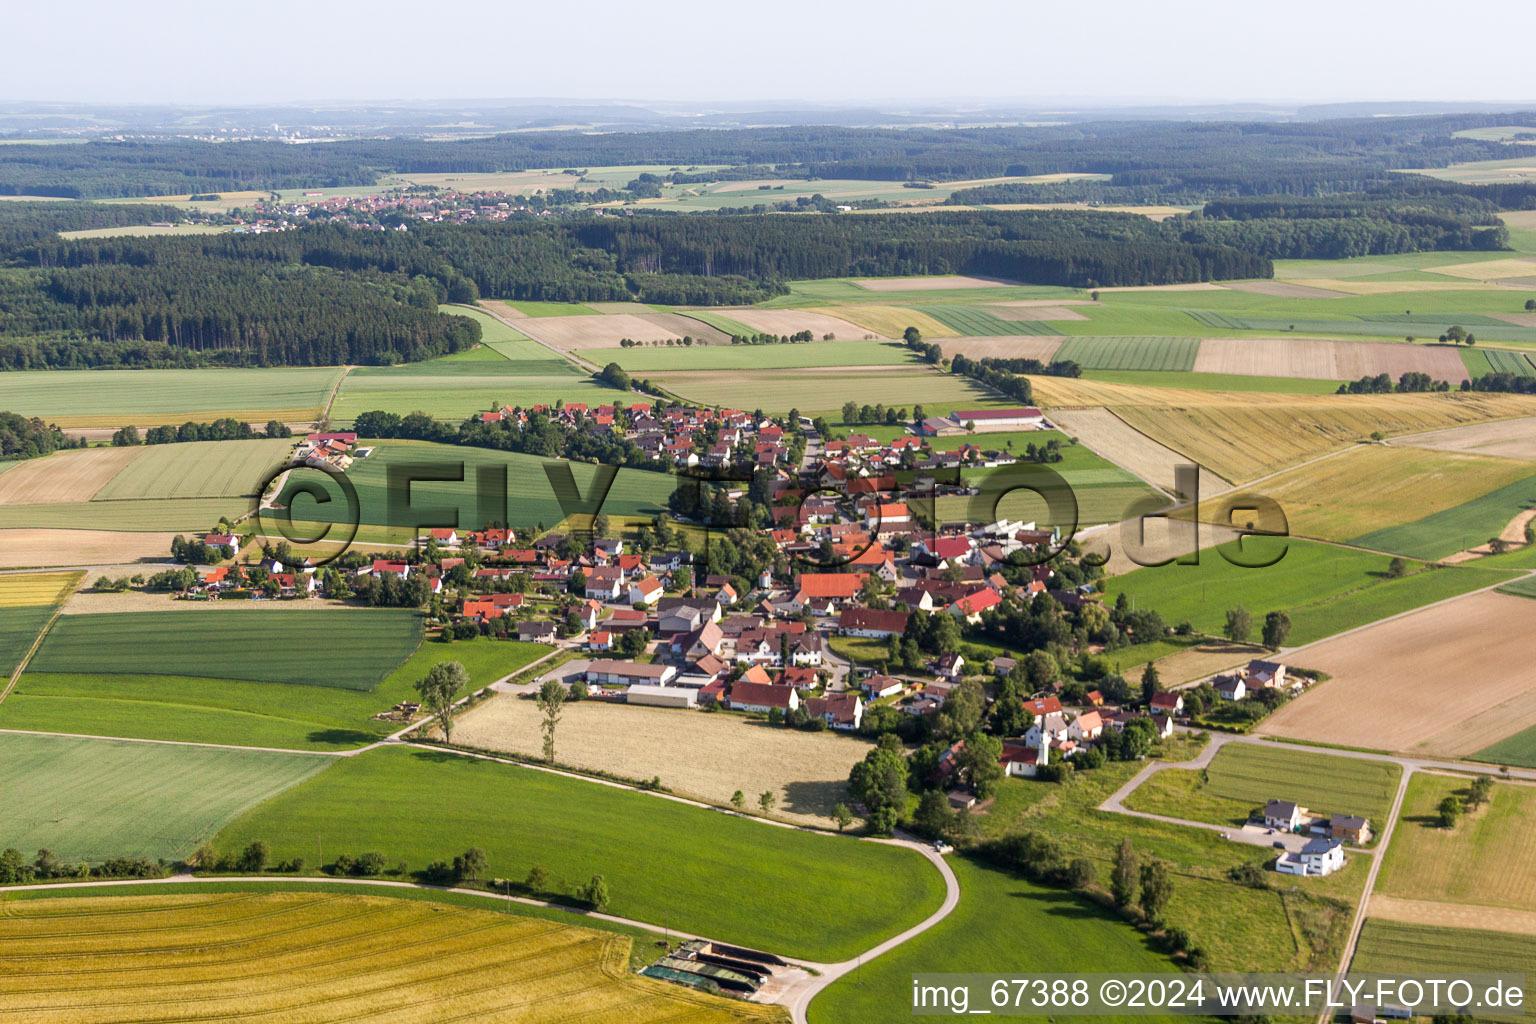 Vue aérienne de Dans le quartier Moosbeuren à Oberstadion à Moosbeuren dans le département Bade-Wurtemberg, Allemagne